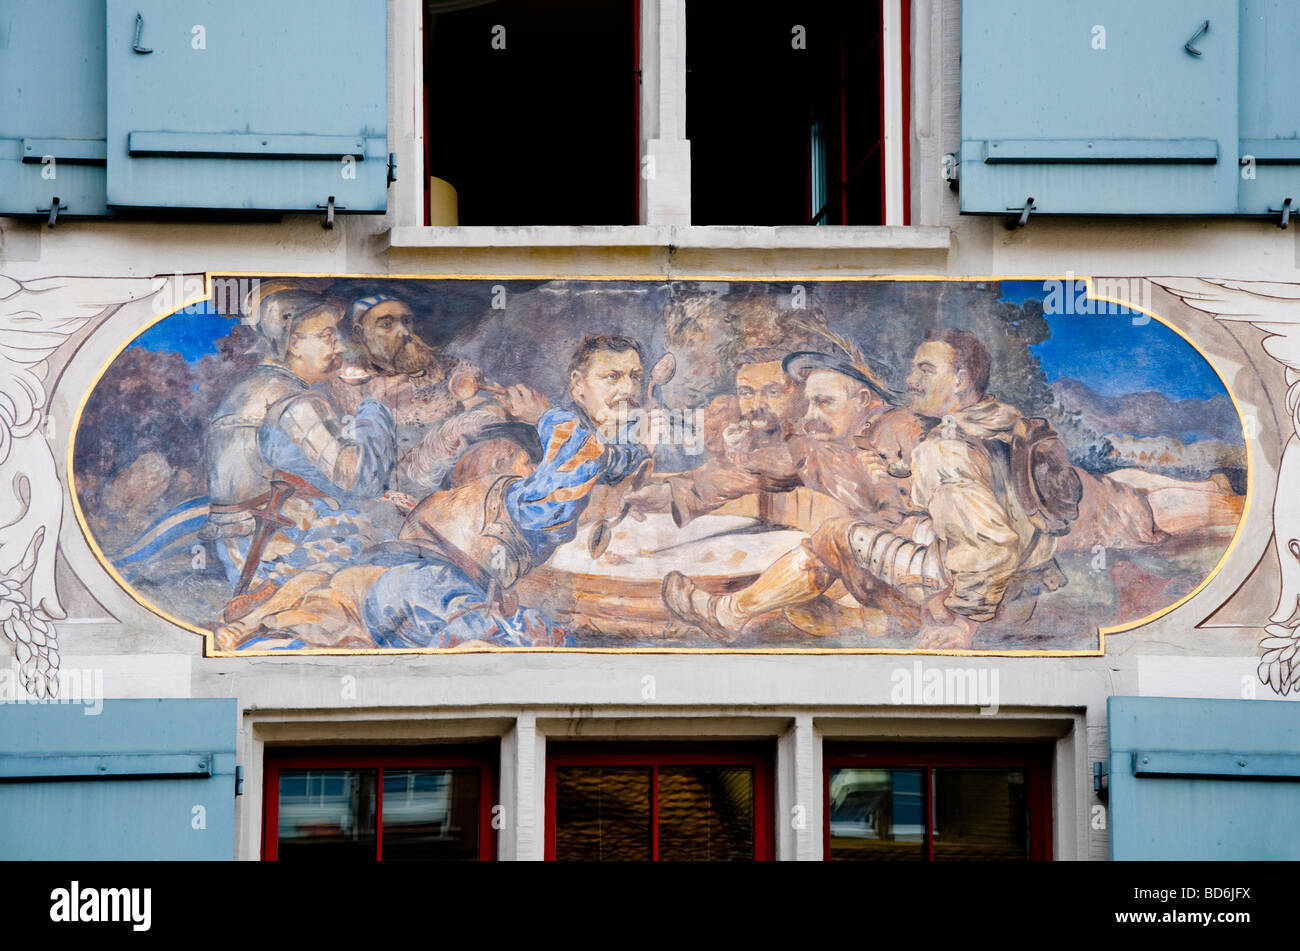 Zug, Suiza. Pintado en la fachada de la casa Kolinplatz Foto de stock